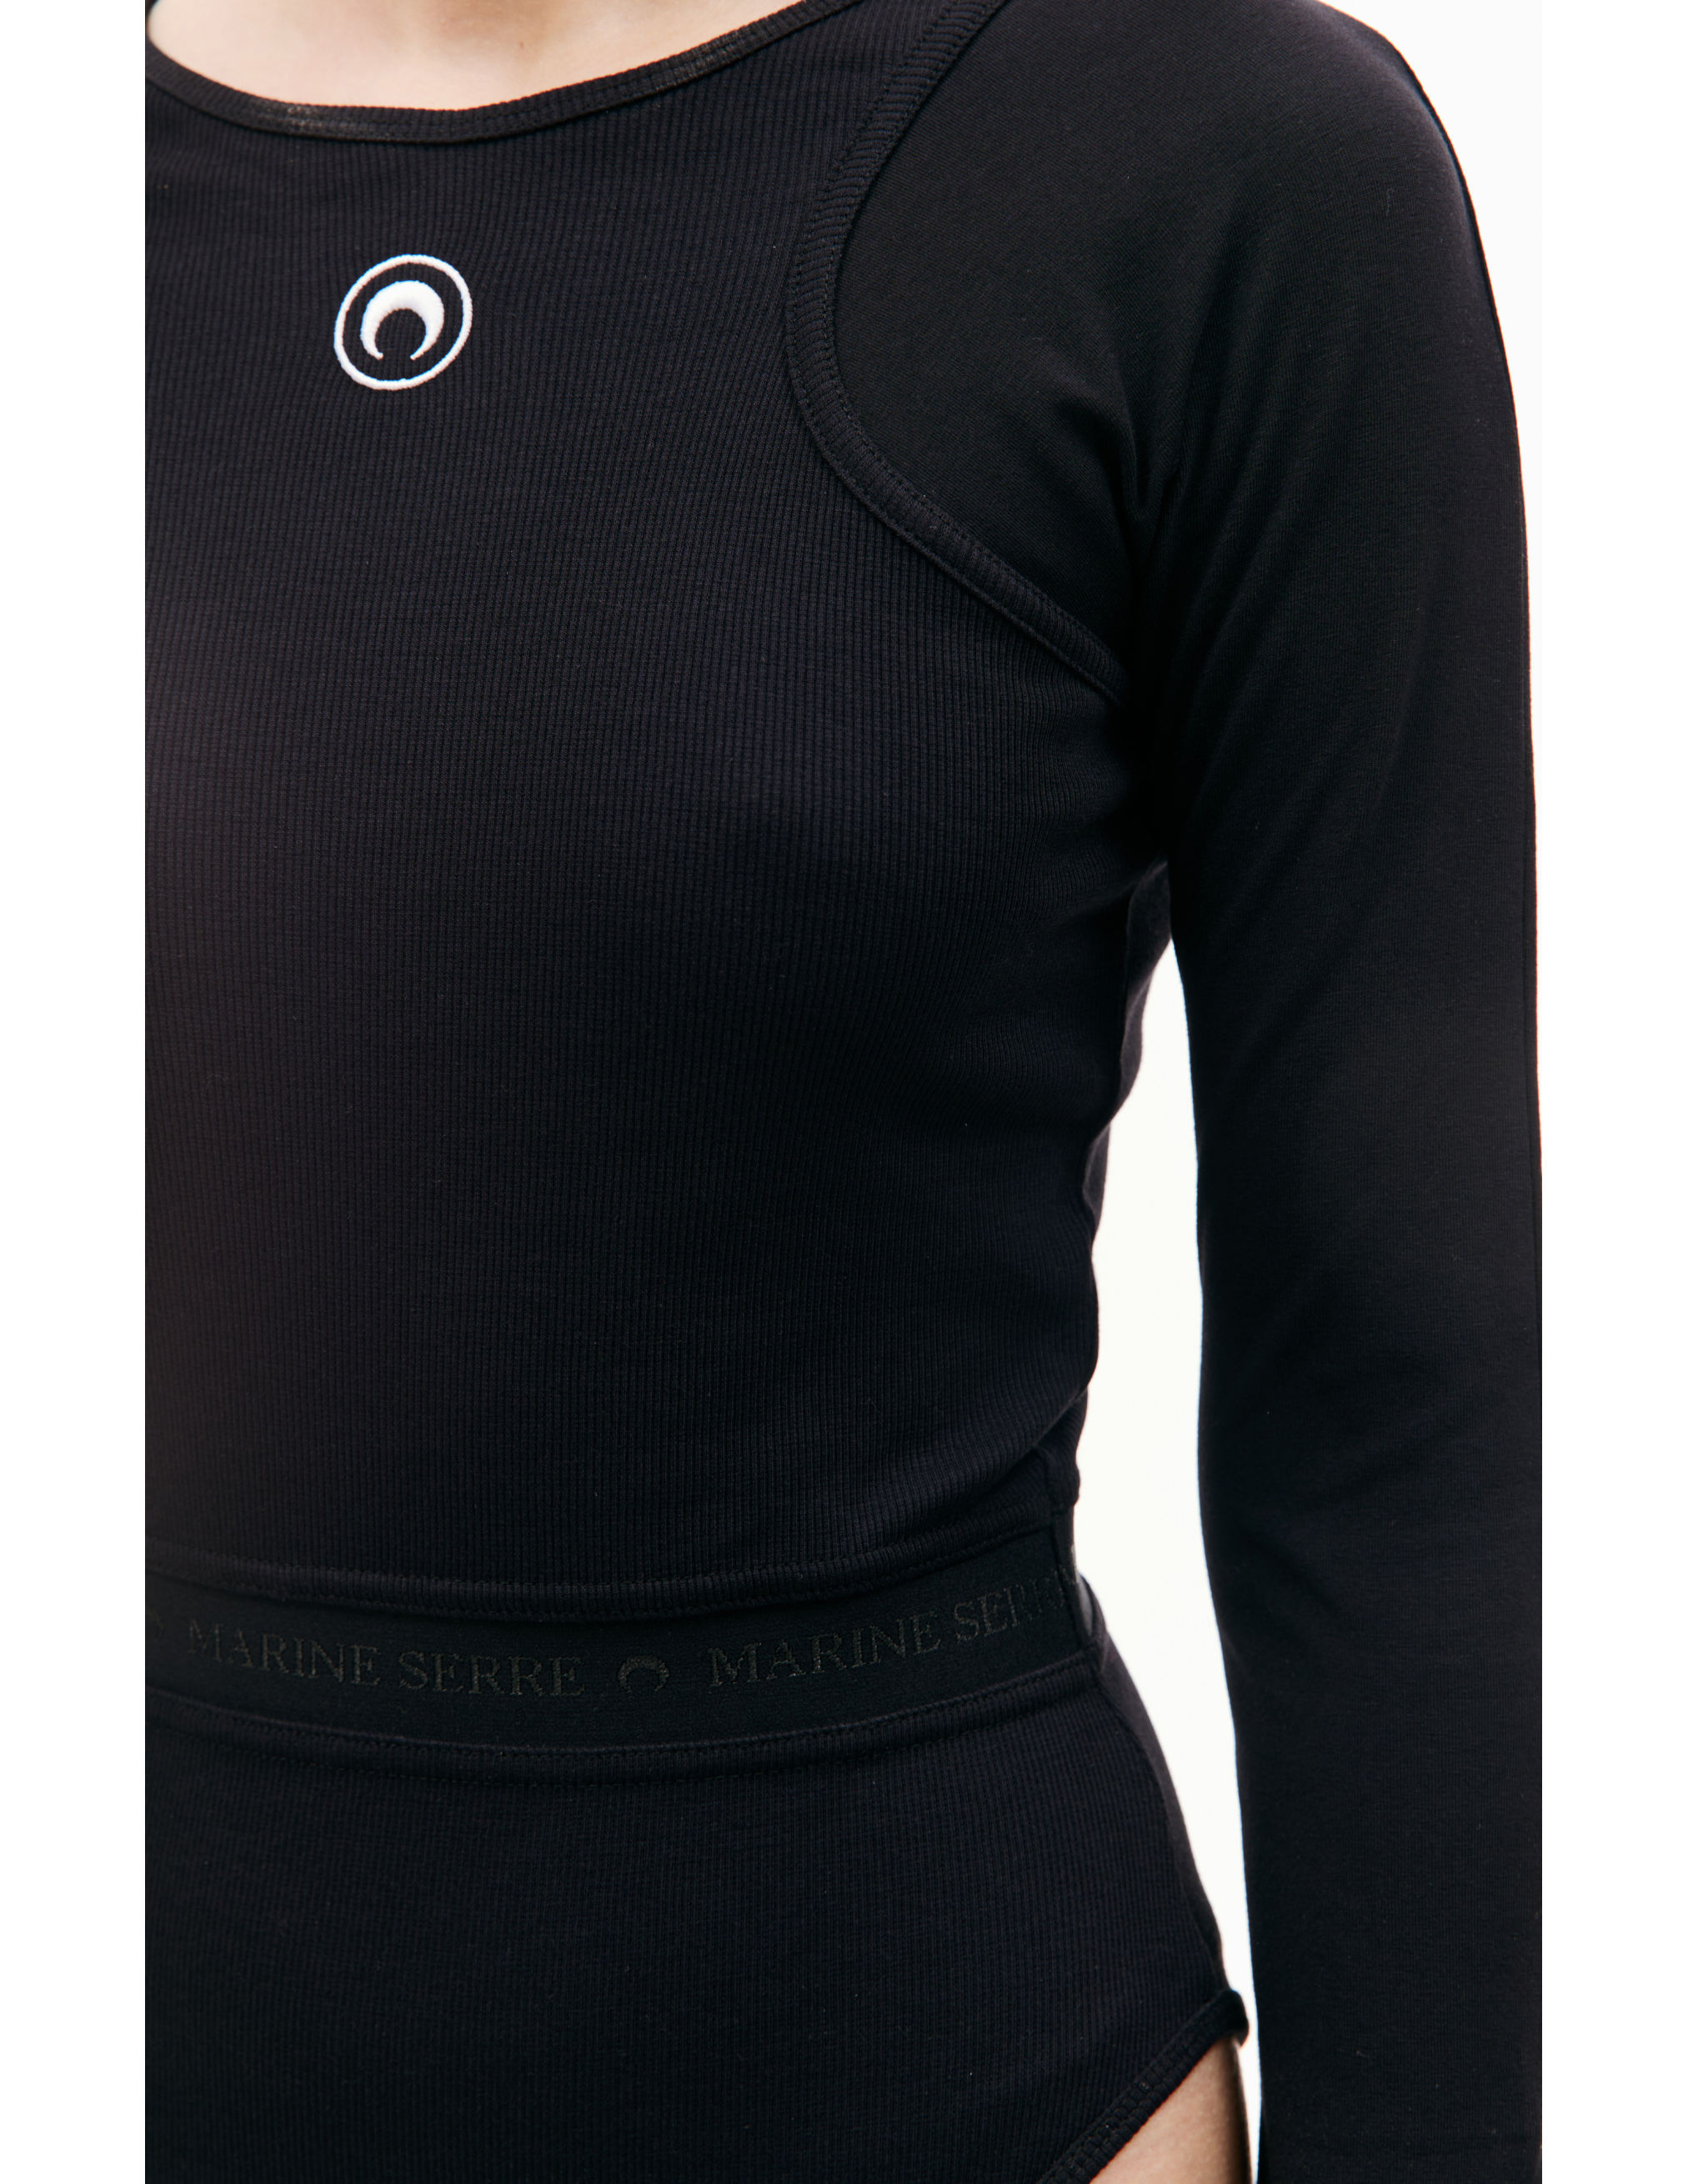 Черный боди с вышивкой логотипа MARINE SERRE WTO062/CJER0011/BK99, размер S;M;L;XL WTO062/CJER0011/BK99 - фото 5